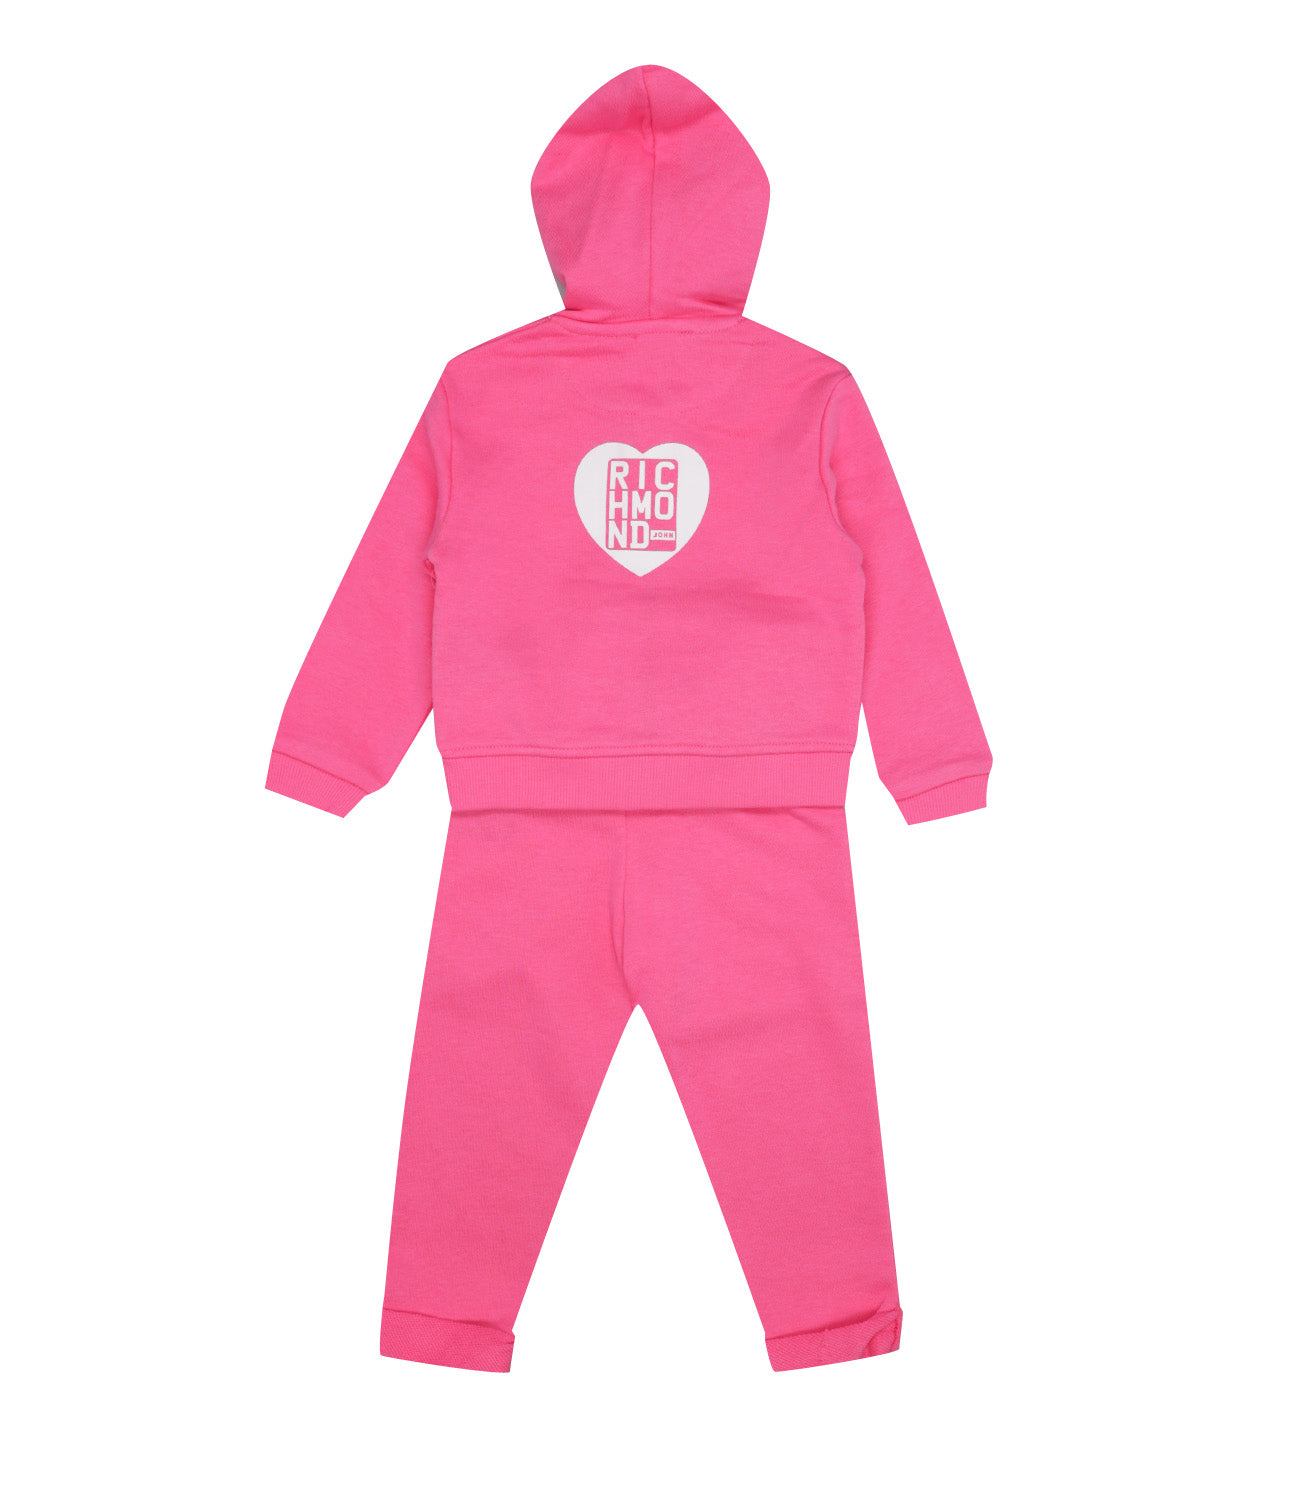 Richmond Kids | Sweatshirt and Pant Set Clonat Pink